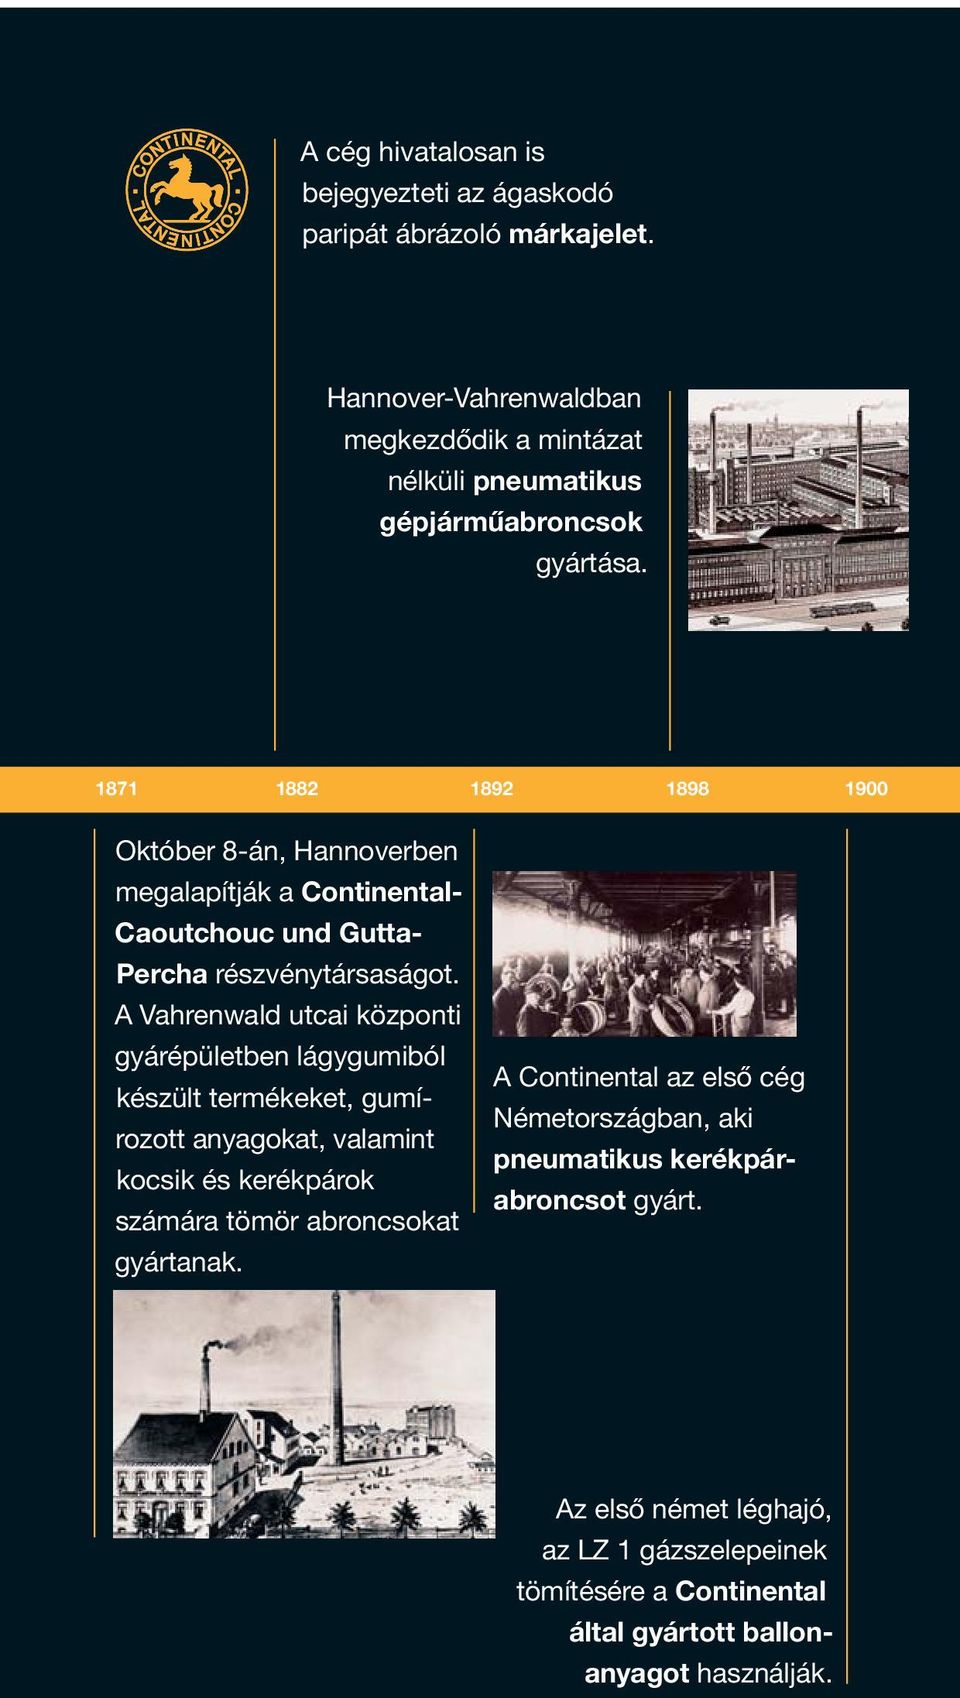 1871 1882 1892 1898 1900 Október 8-án, Hannoverben megalapítják a Continental- Caoutchouc und Gutta- Percha részvénytársaságot.